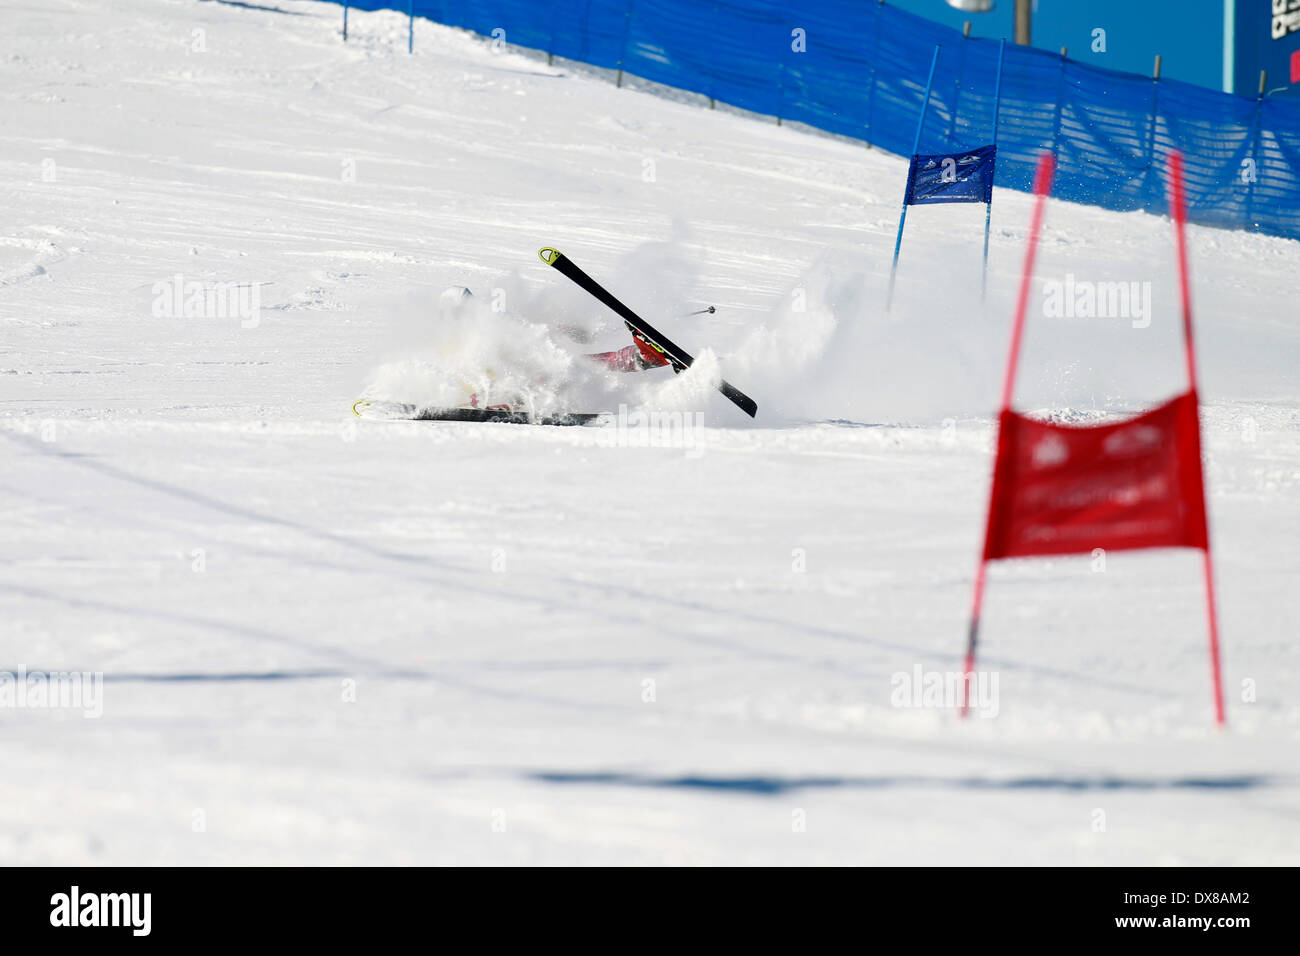 Uno sciatore di neve caduta fuori controllo mentre racing in slalom gigante corso. Foto Stock